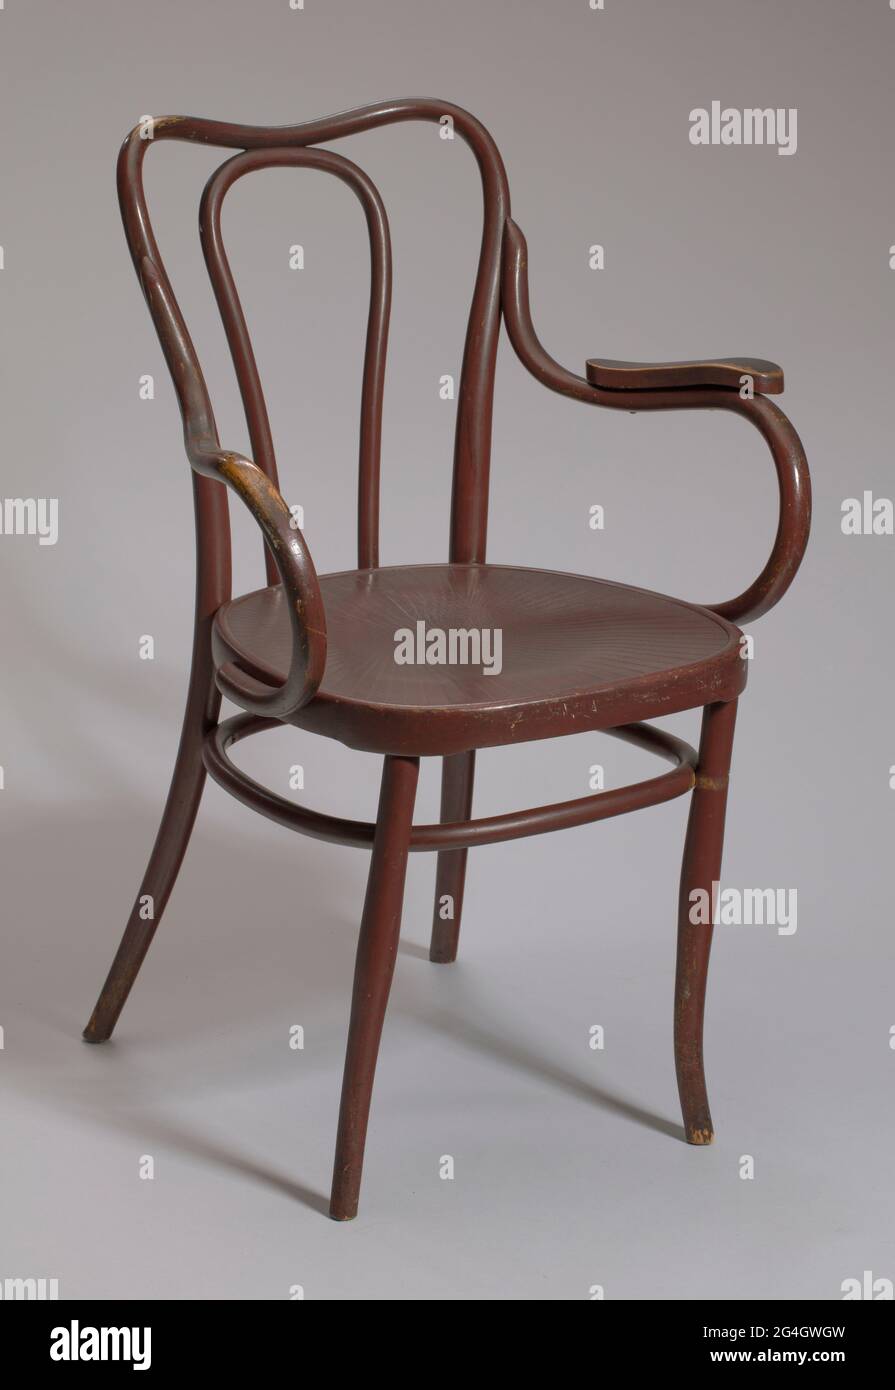 Fauteuil en bois de bentwood à quatre pattes. Chaise recouverte d'une  peinture ou d'une finition rouge-marron foncé. La chaise est ronde avec des  rebords sculptés peu profonds sur le dessus du siège.